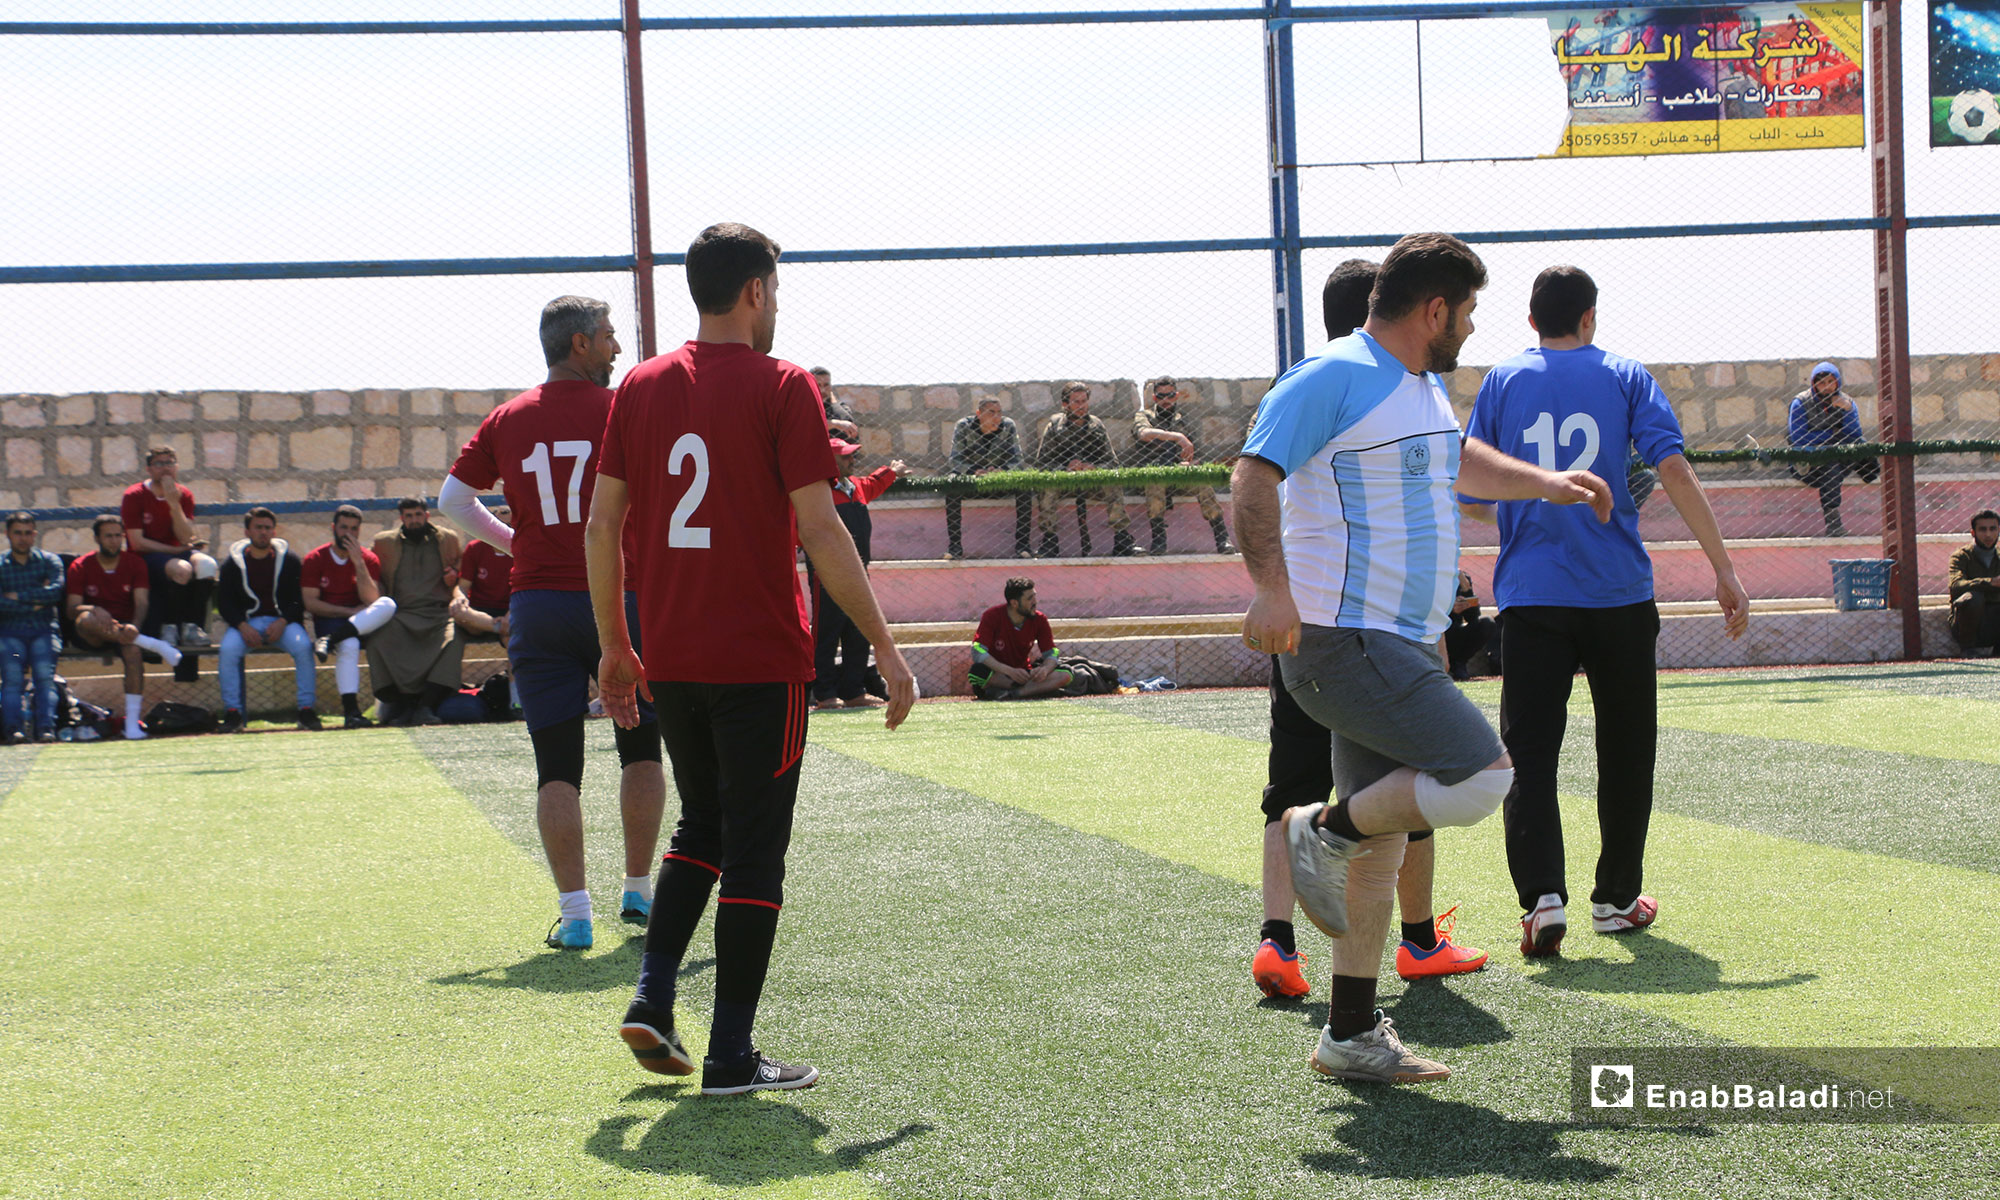 مباراة في بطولة دوري المعلمين لمديريات التربية بريف حلب الشمالي - 21 من آذار 2019 (عنب بلدي)